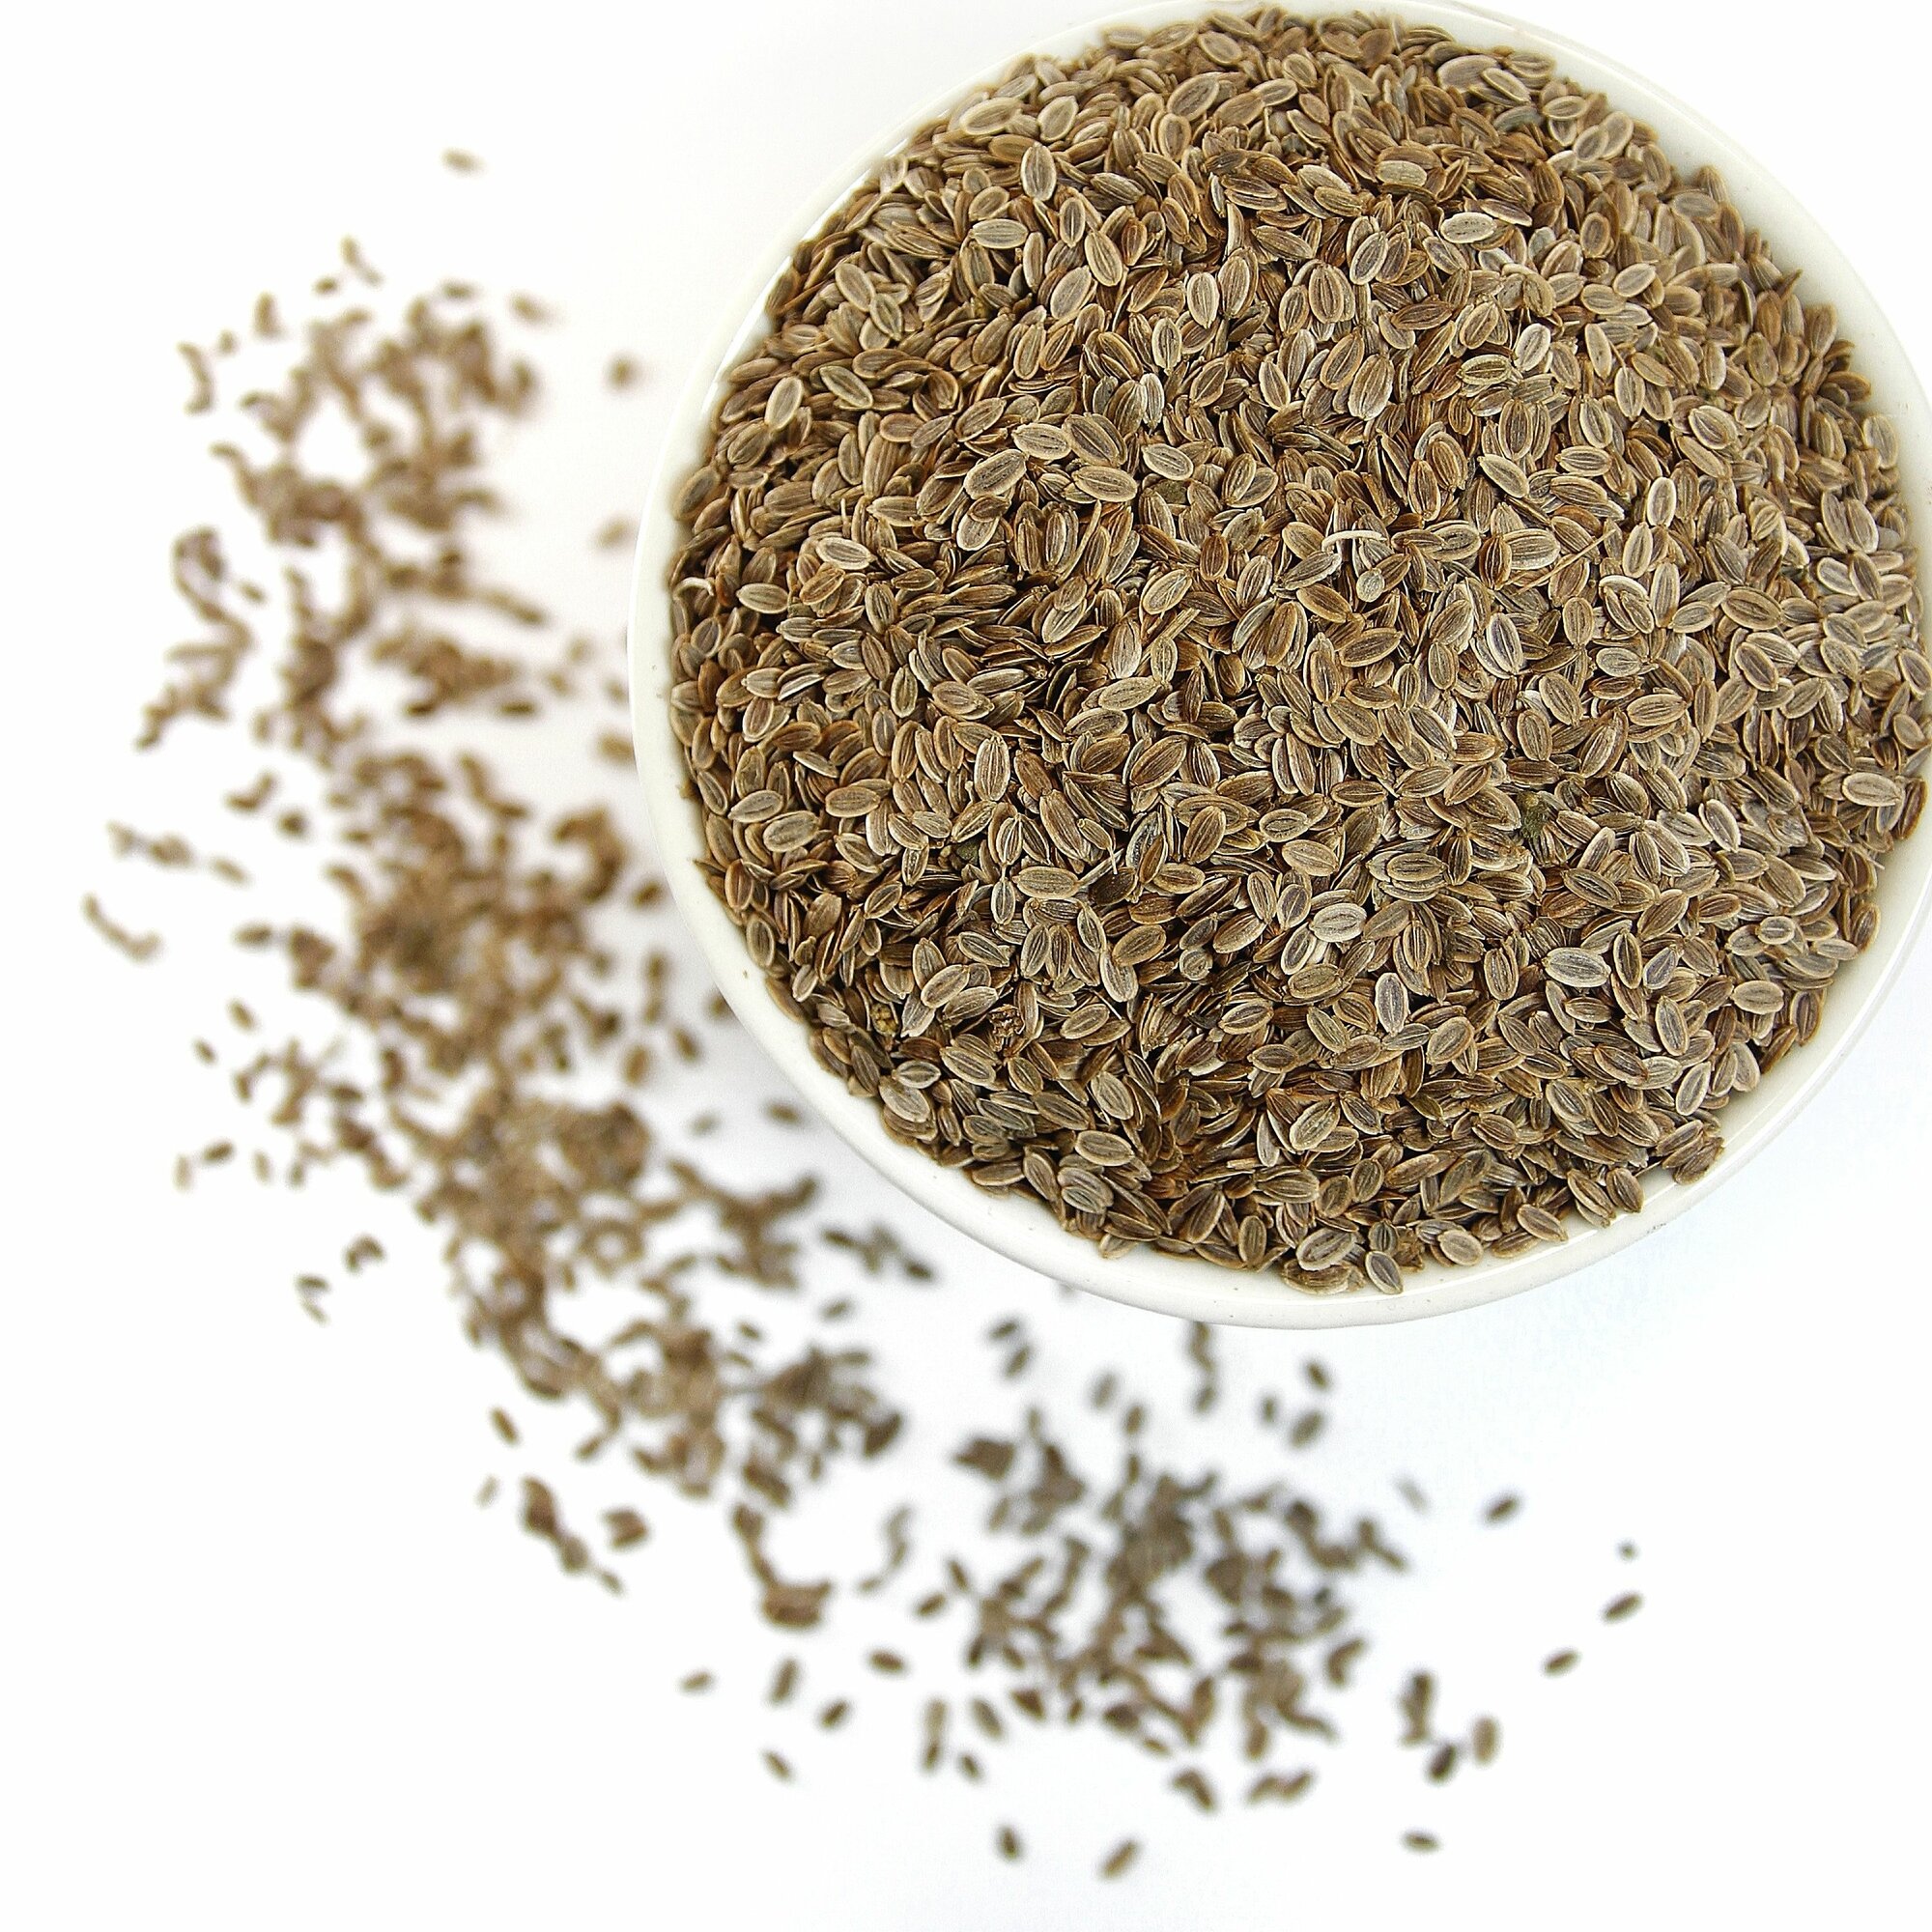 Укроп 50 гр - семена сушеные, цельные, ароматные, плодовый чай, фиточай, фитосбор